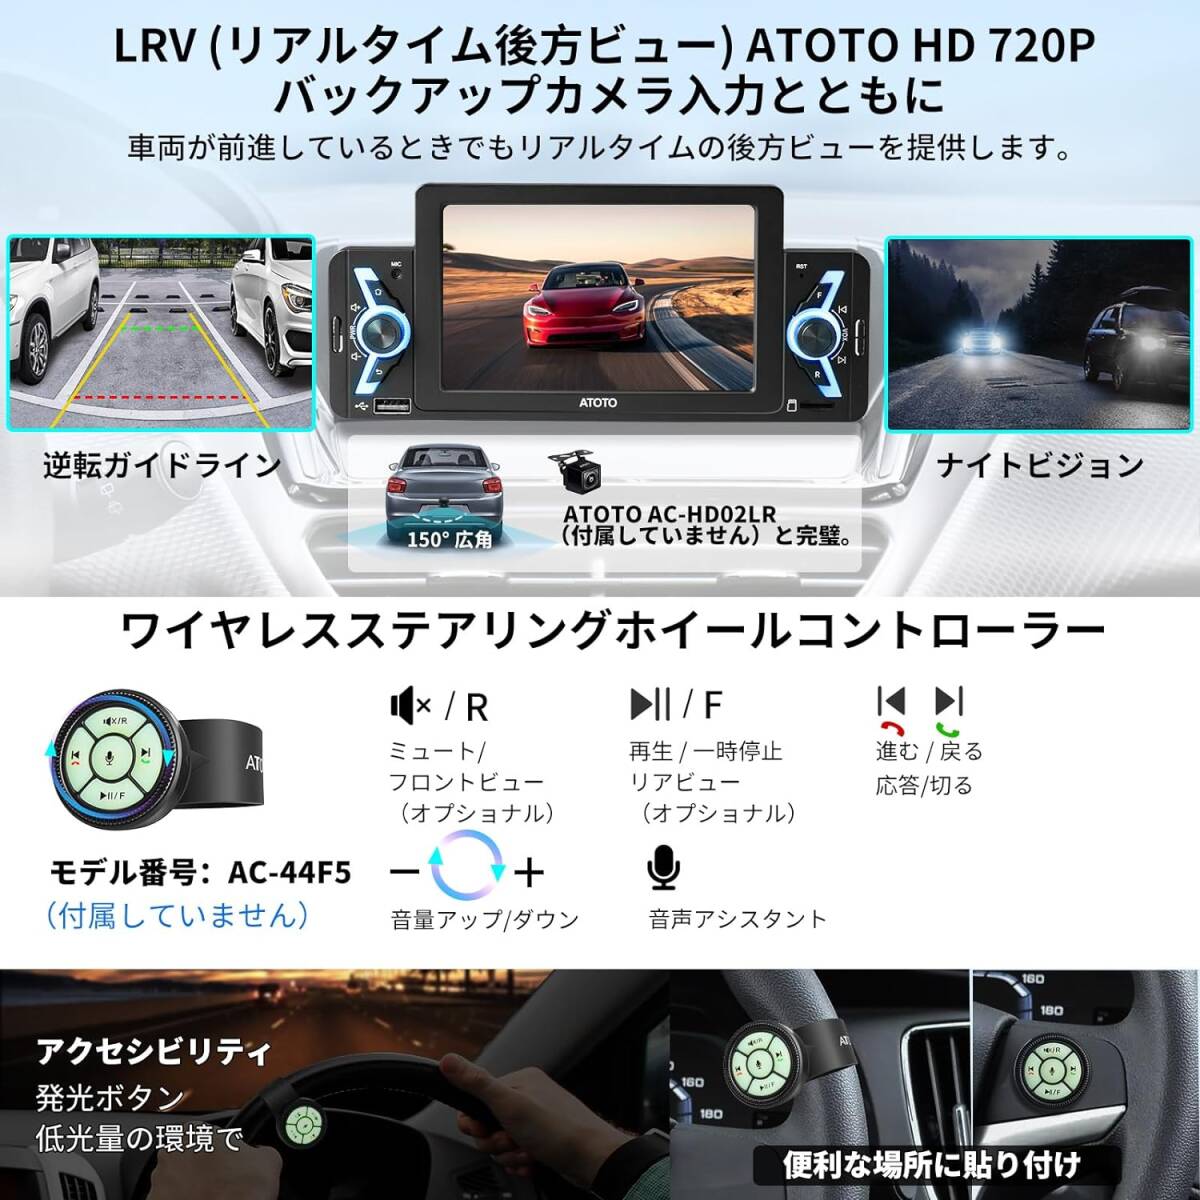 ATOTO F7WE 1DIN 5インチタッチスクリーンカーナビF7G1A5WEBluetooth、Carplay Android Auto ワイヤレス 5インチタッチスクリーンカーナビの画像5